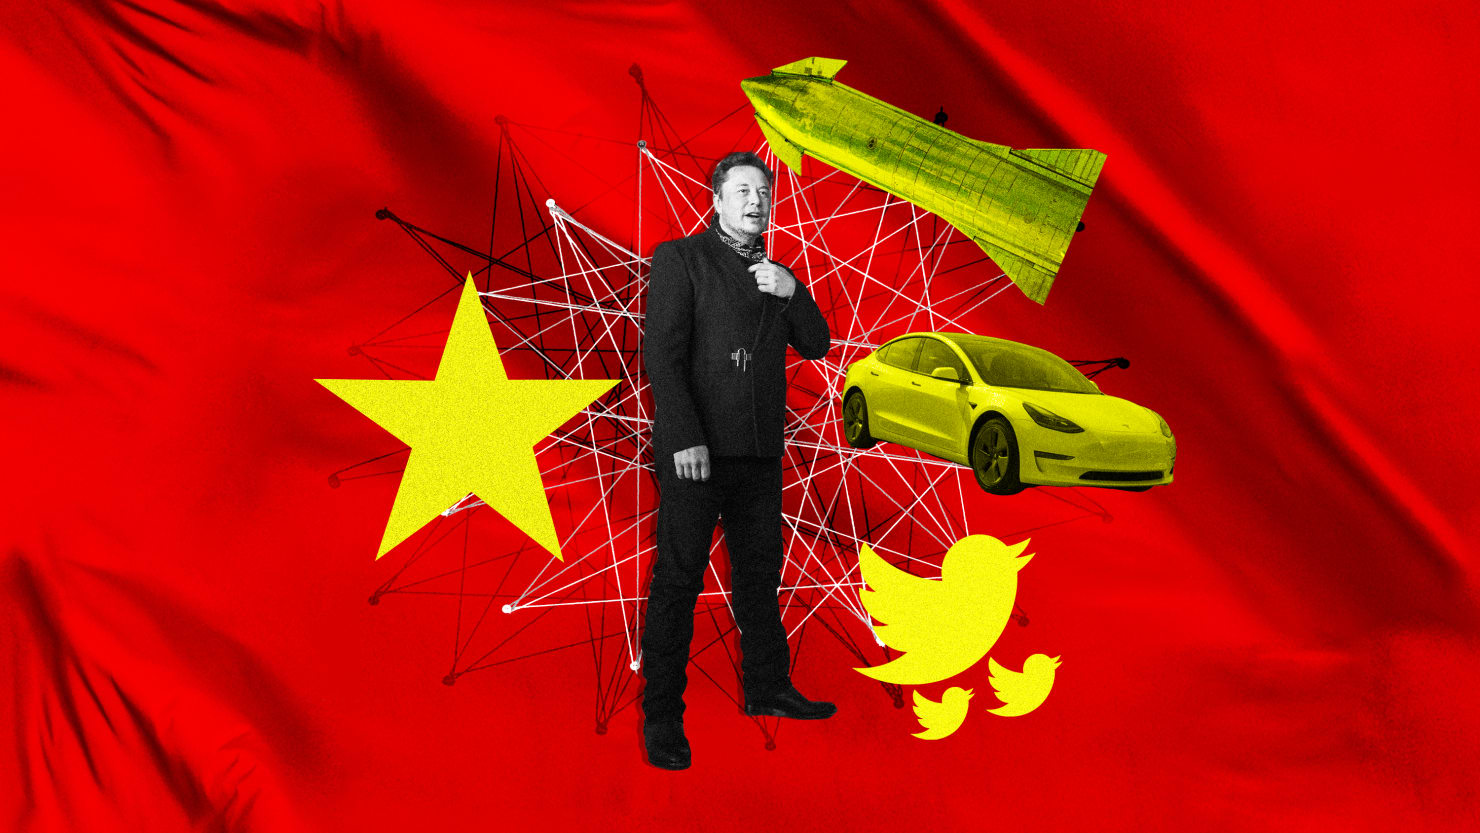 El Congreso debería investigar los lazos comerciales de Elon Musk con China